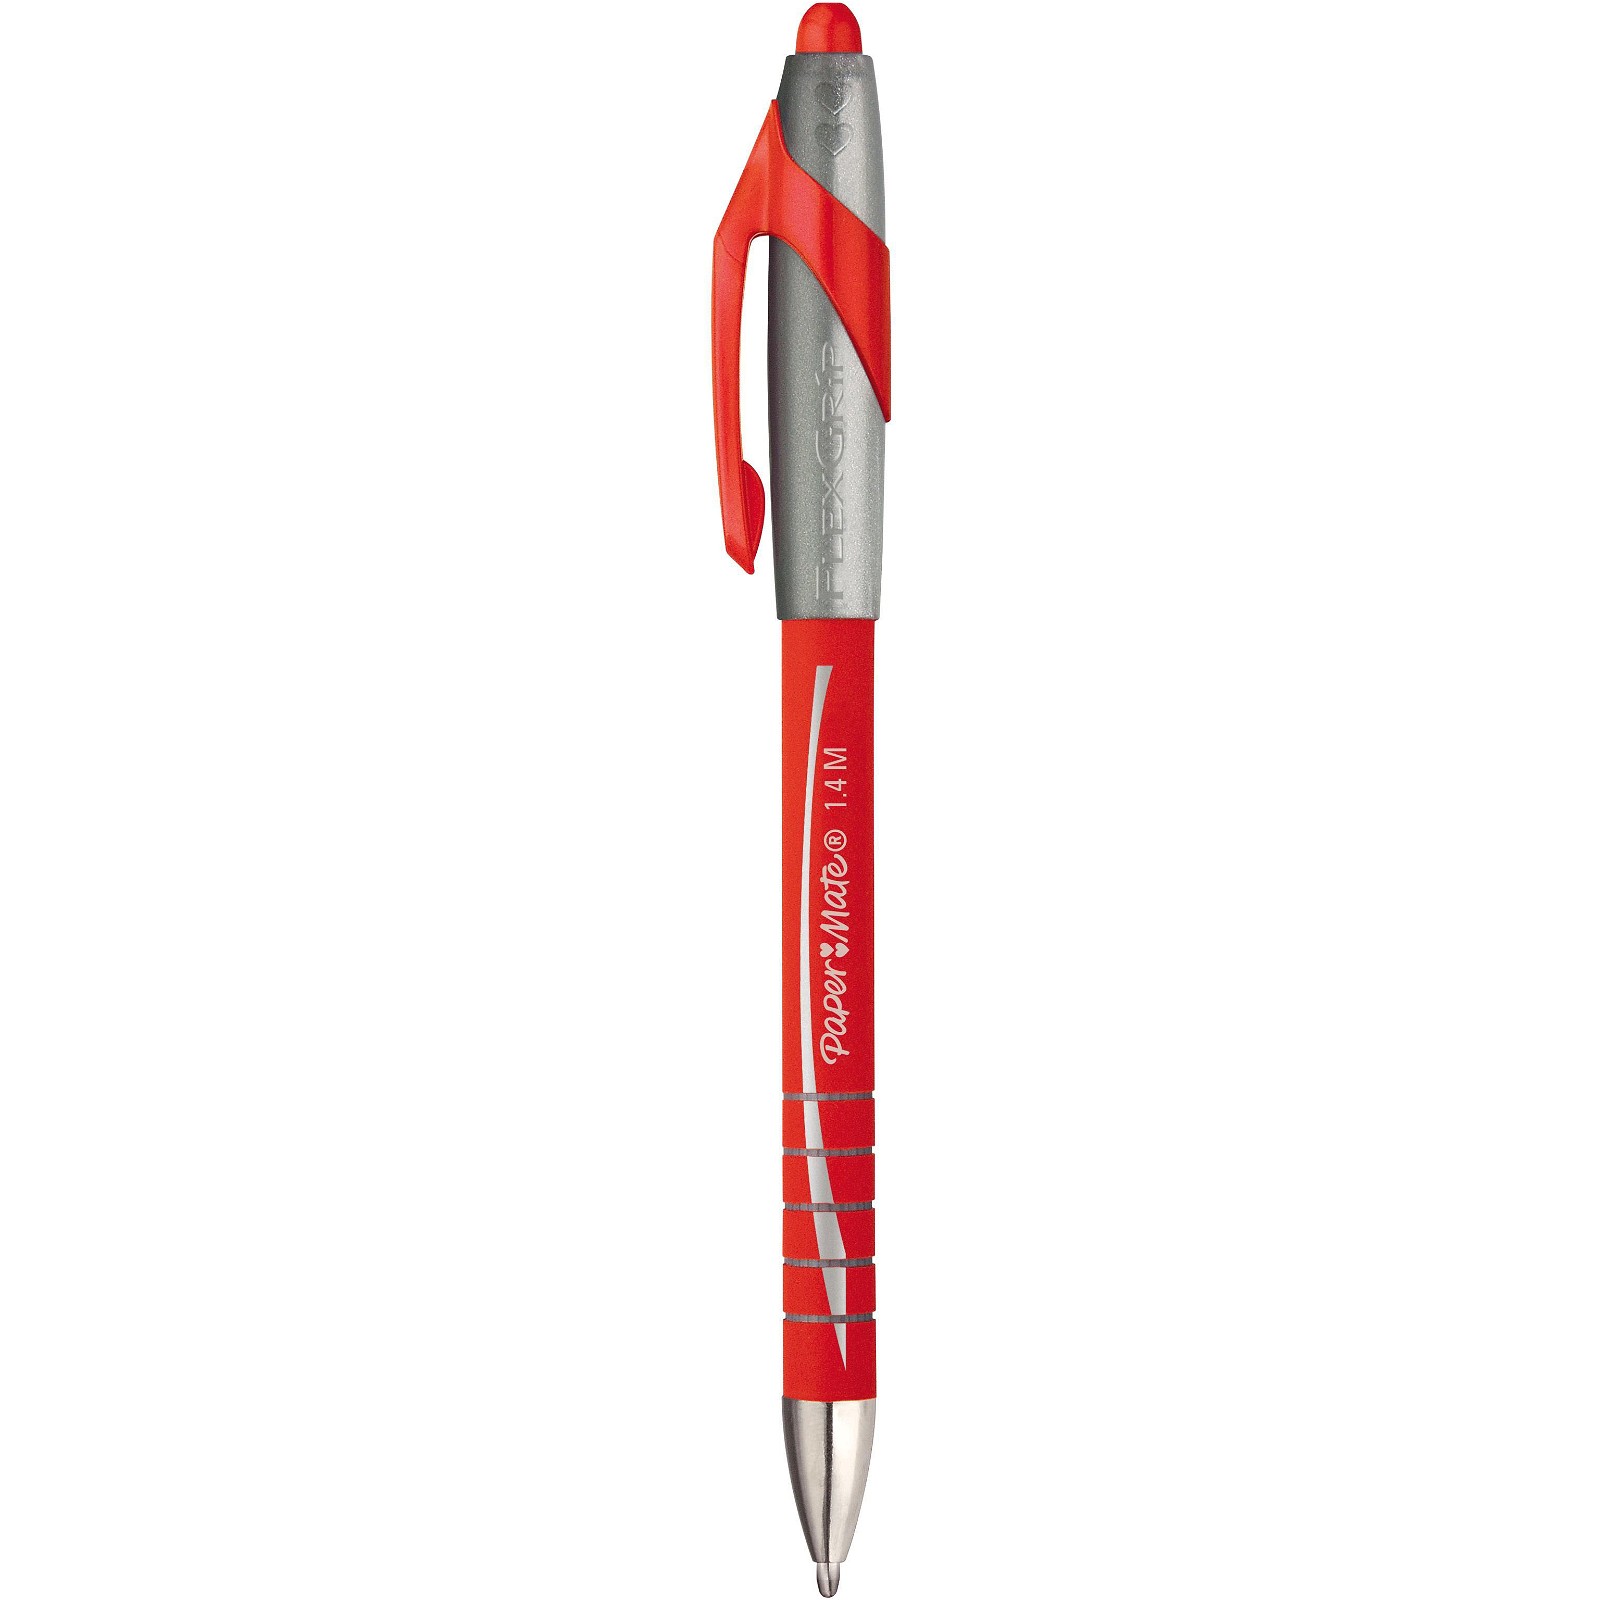 PaperMate FlexGrip Elite med 1,4 mm spids i farven rød